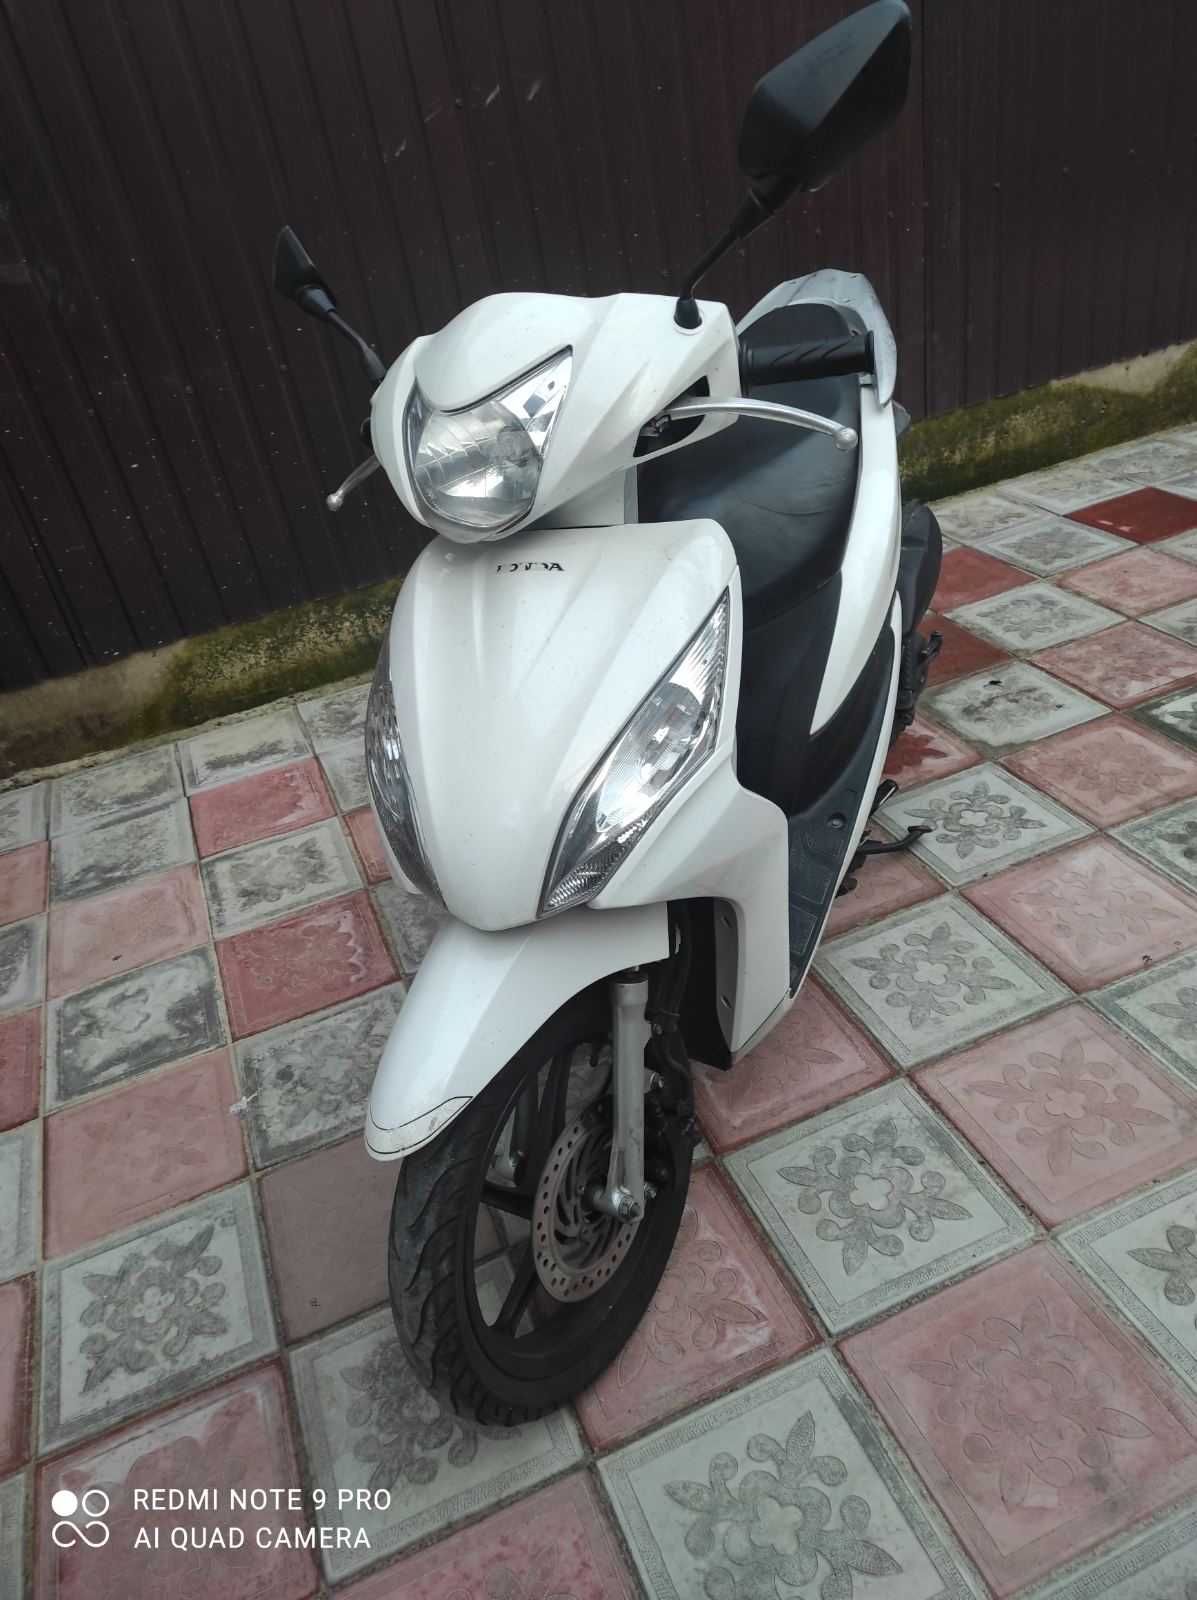 Скутер Honda Dio 110 cc. на высоких колесах с регистрацией